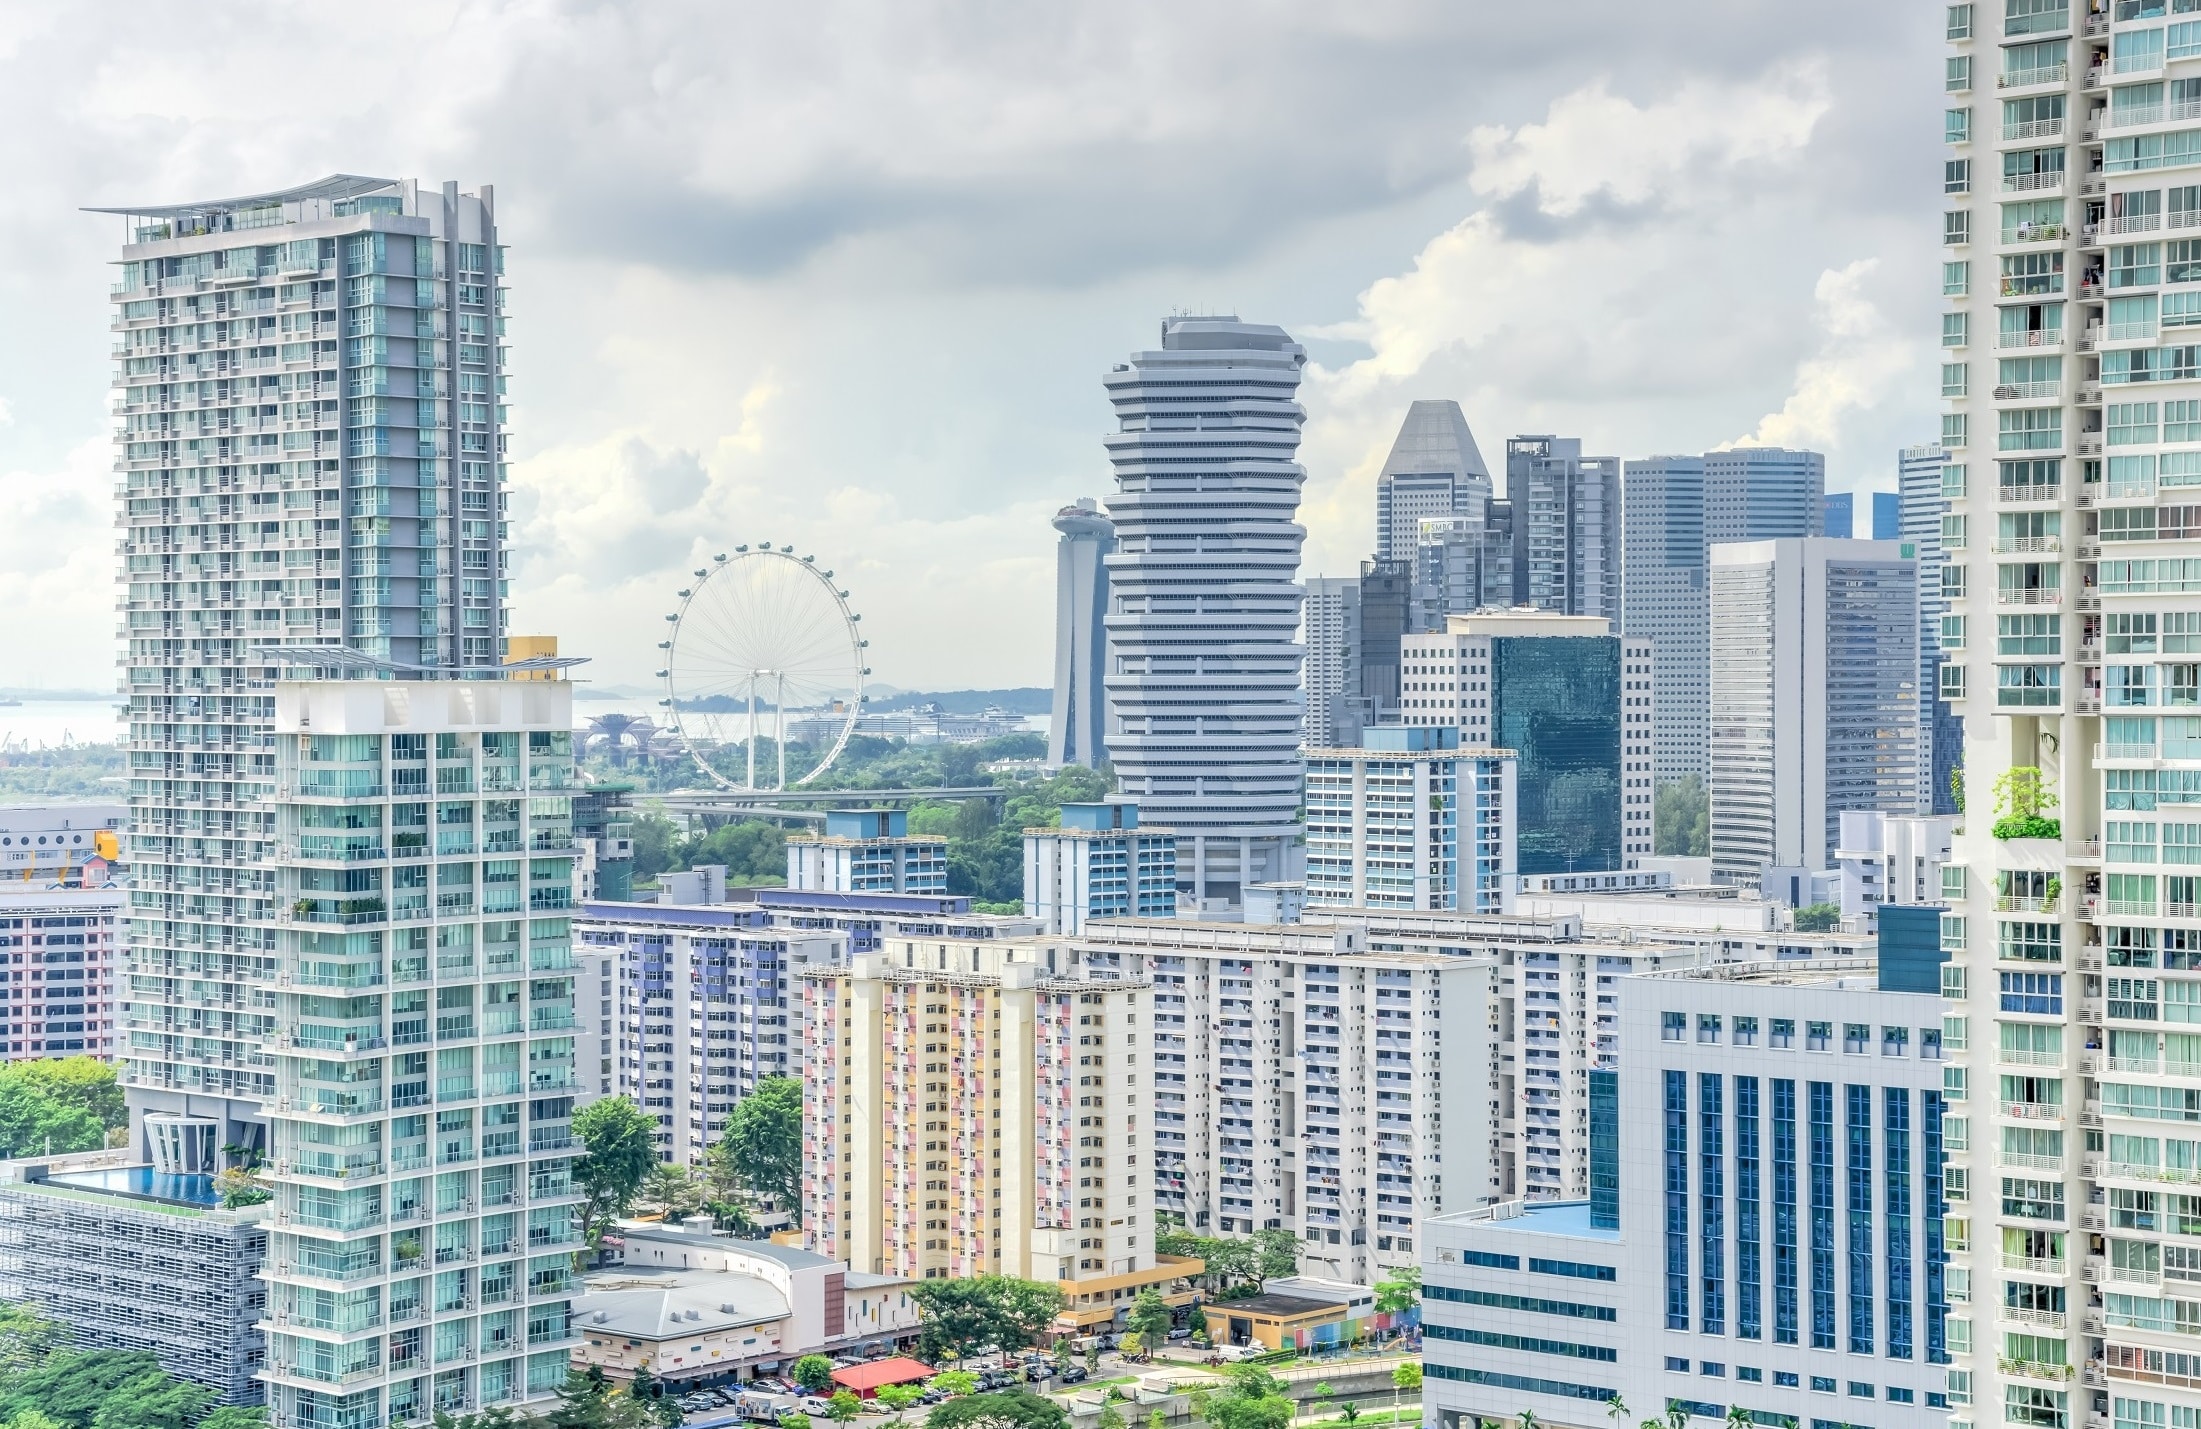 Singapore housing rates climb for 12th quarter despite global recession